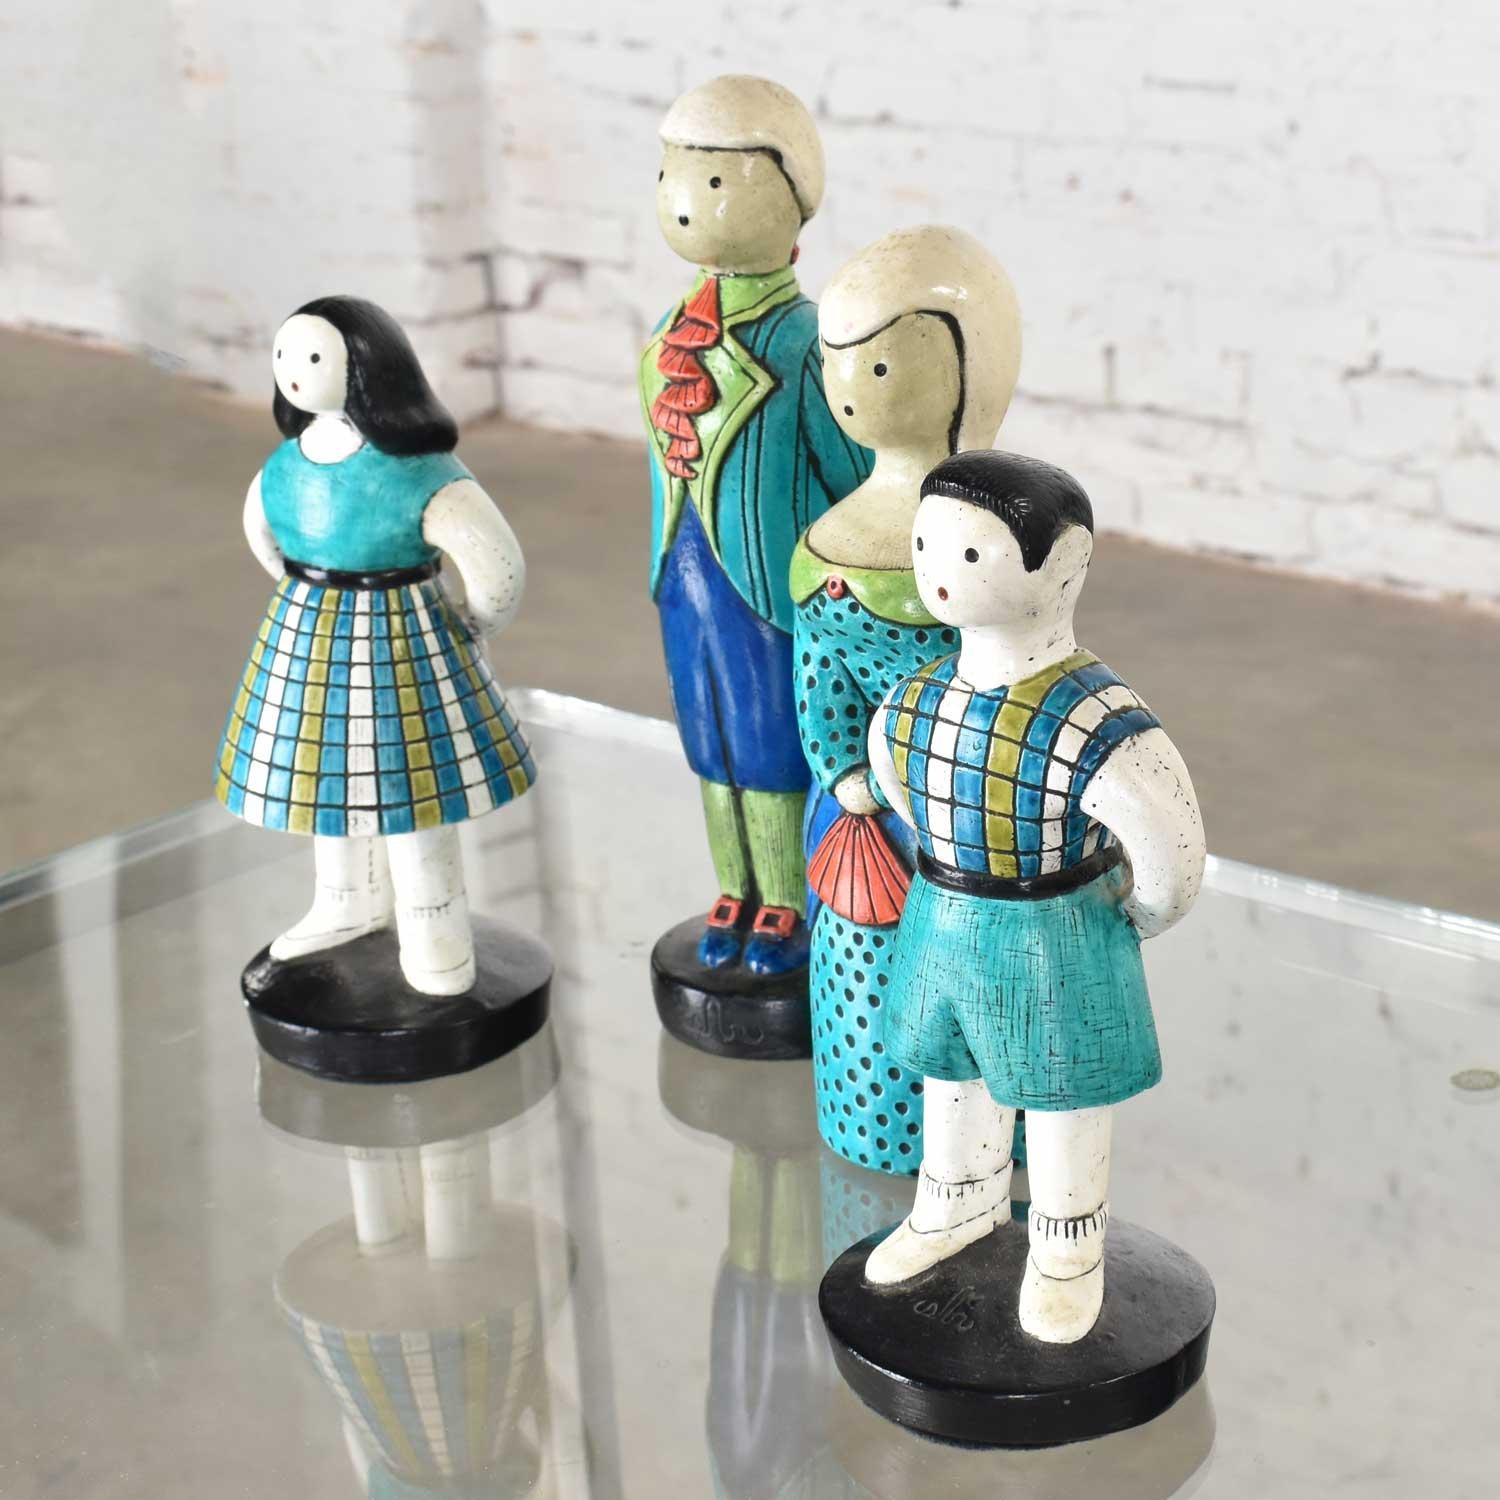 vintage chalkware figurines